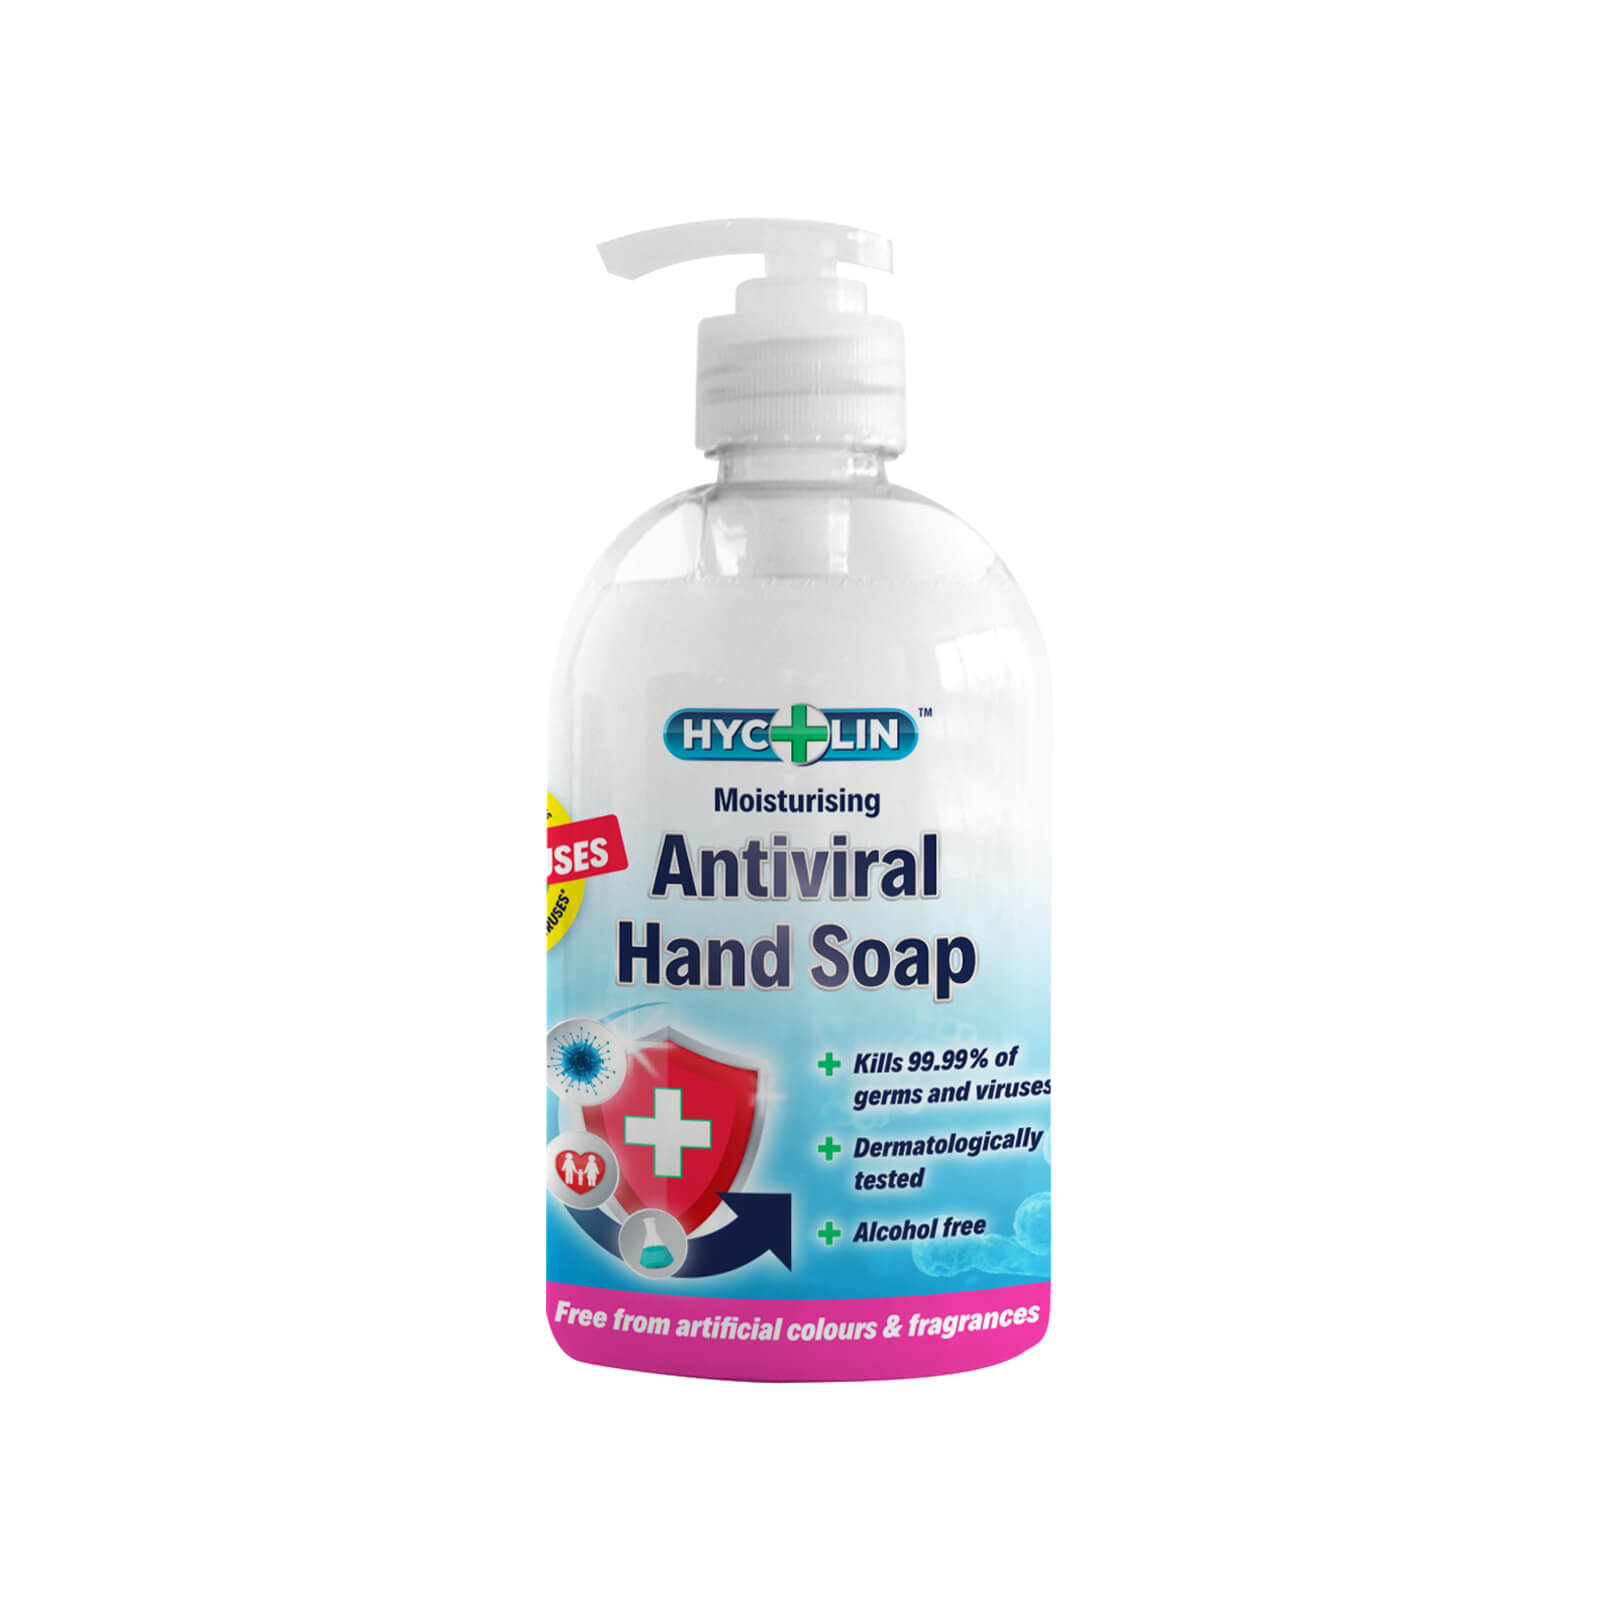 Hycolin Antiviral Hand Soap